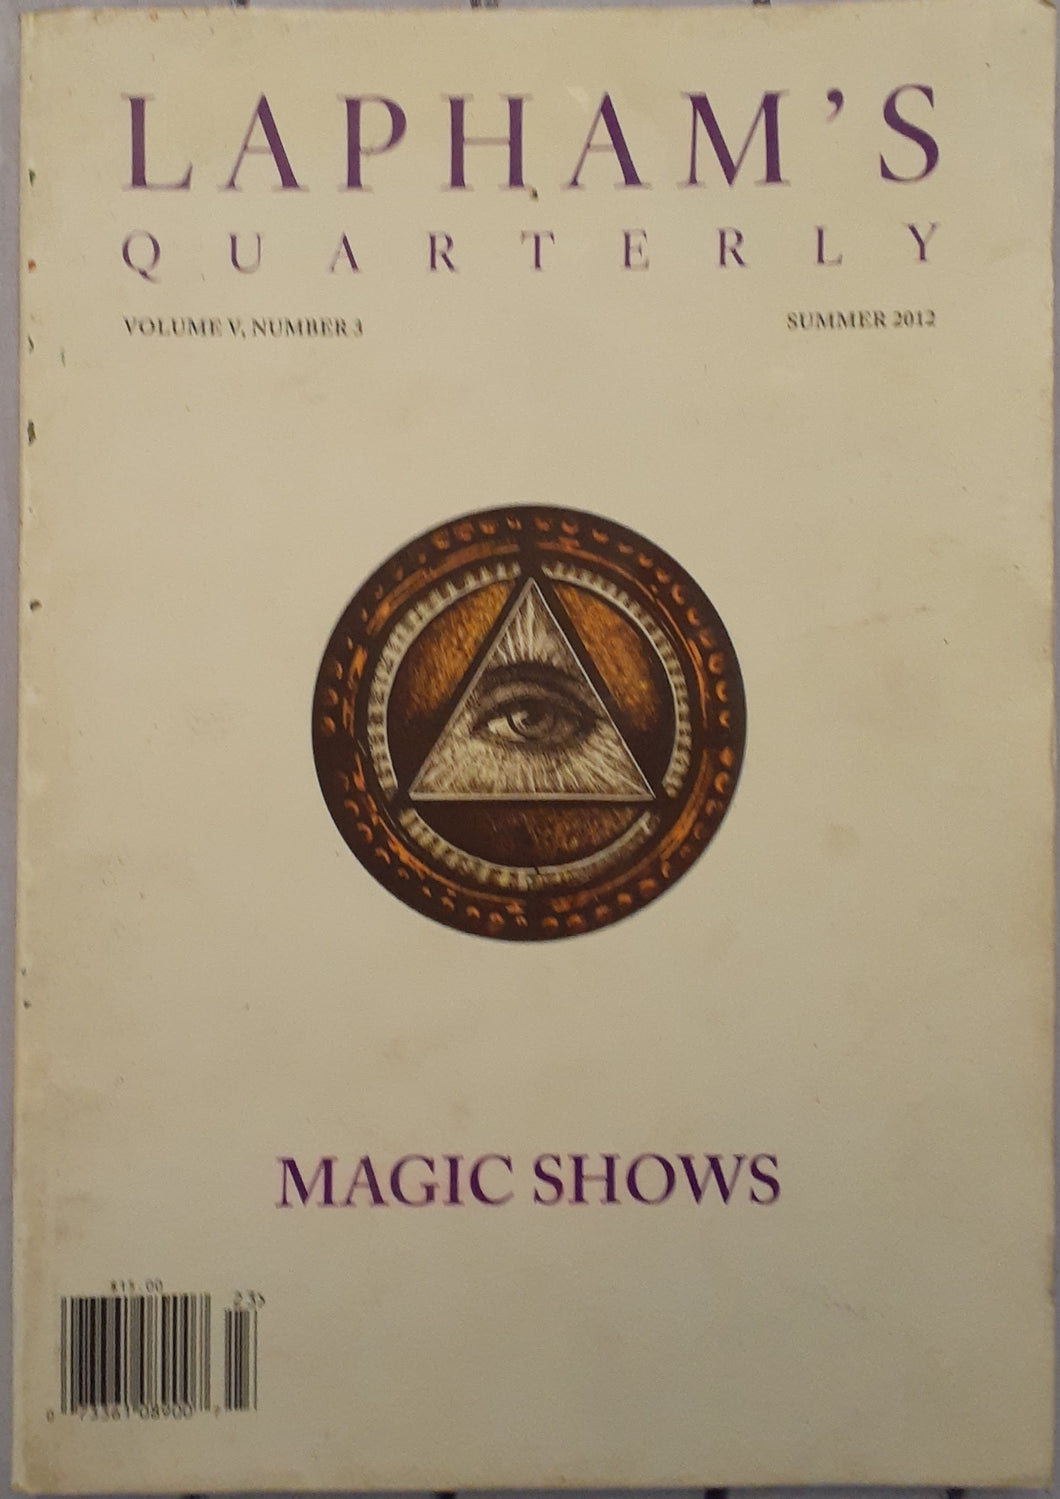 Lapham's Quarterly - Magic Shows